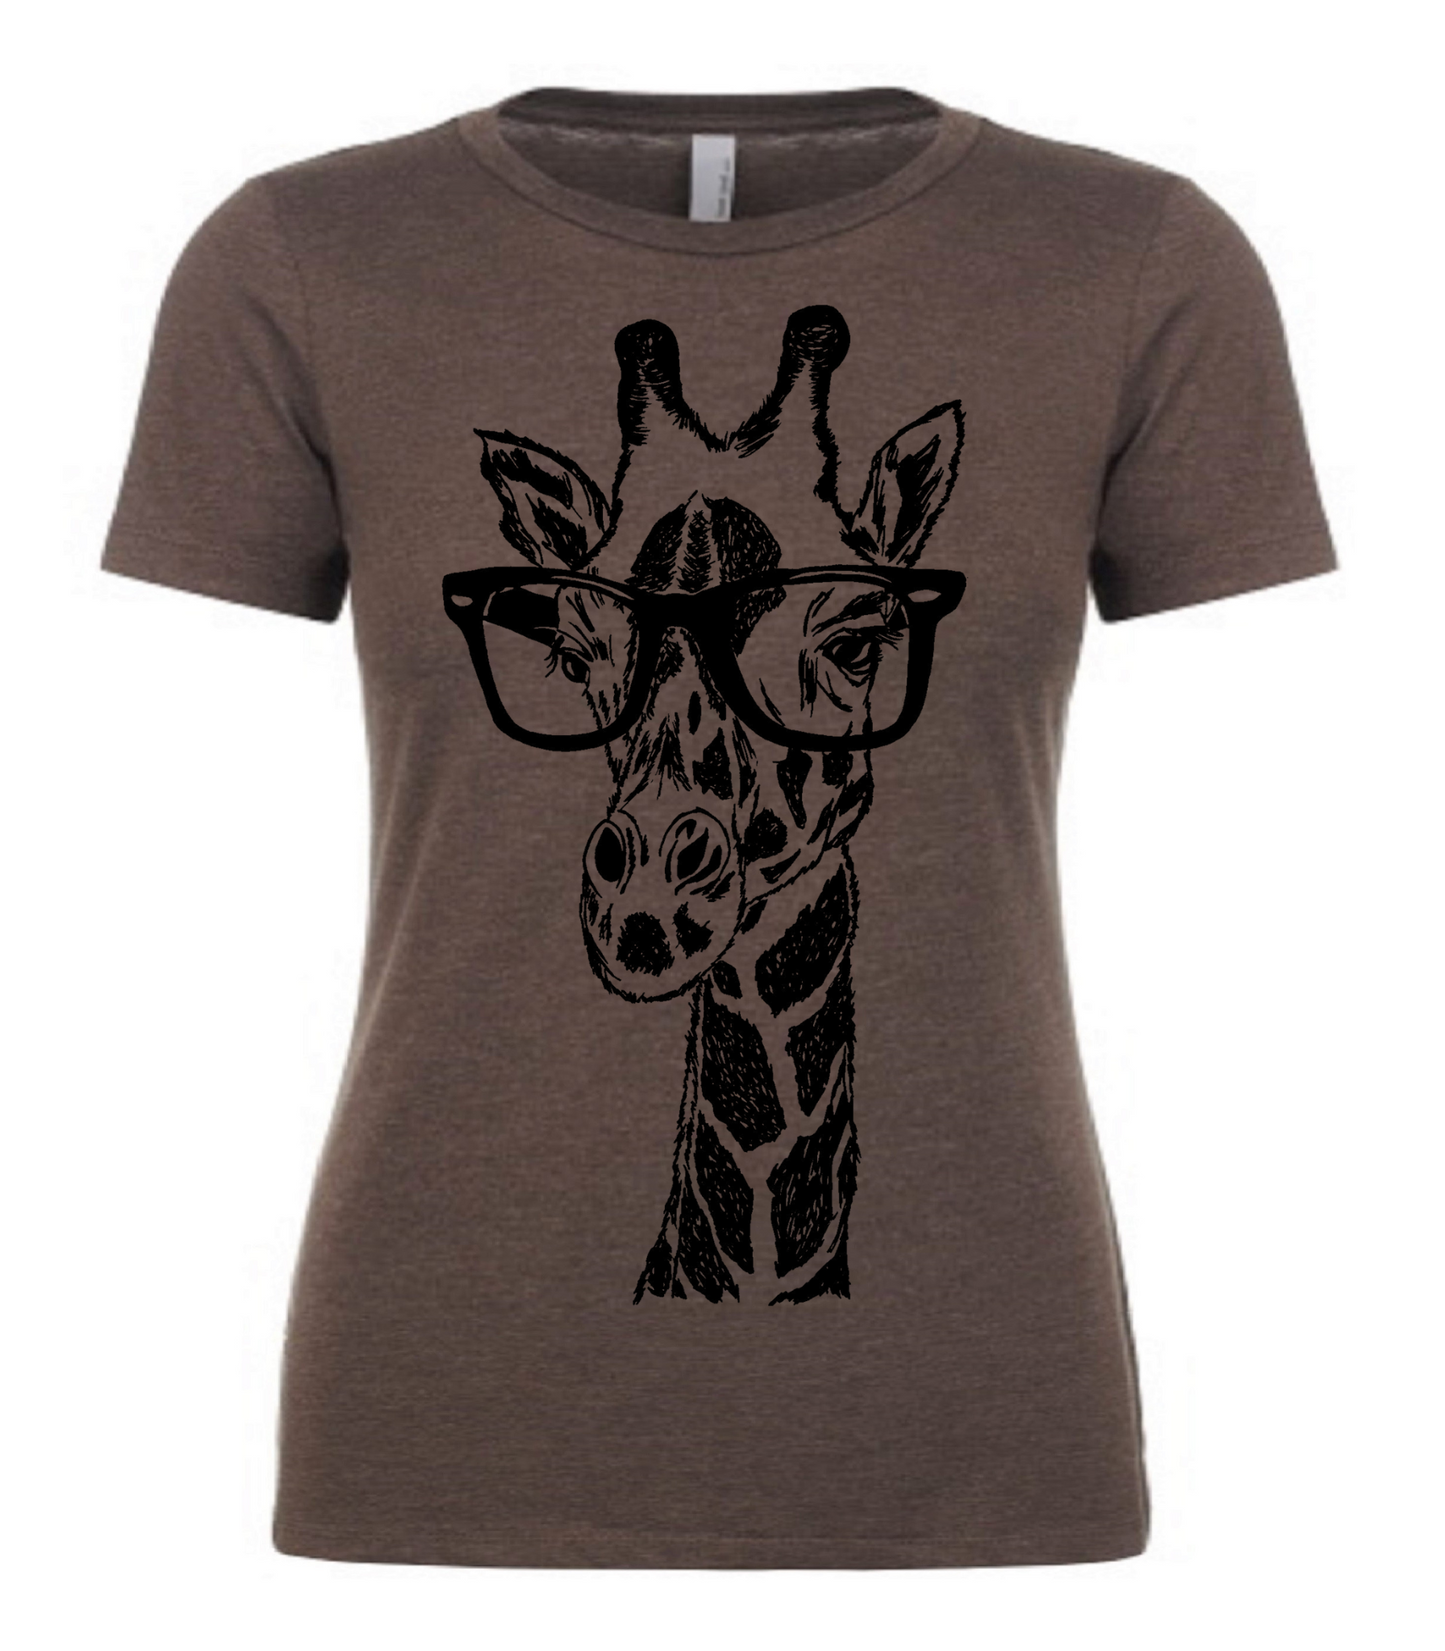 Giraffe Wearing Glasses Ladies T Shirt